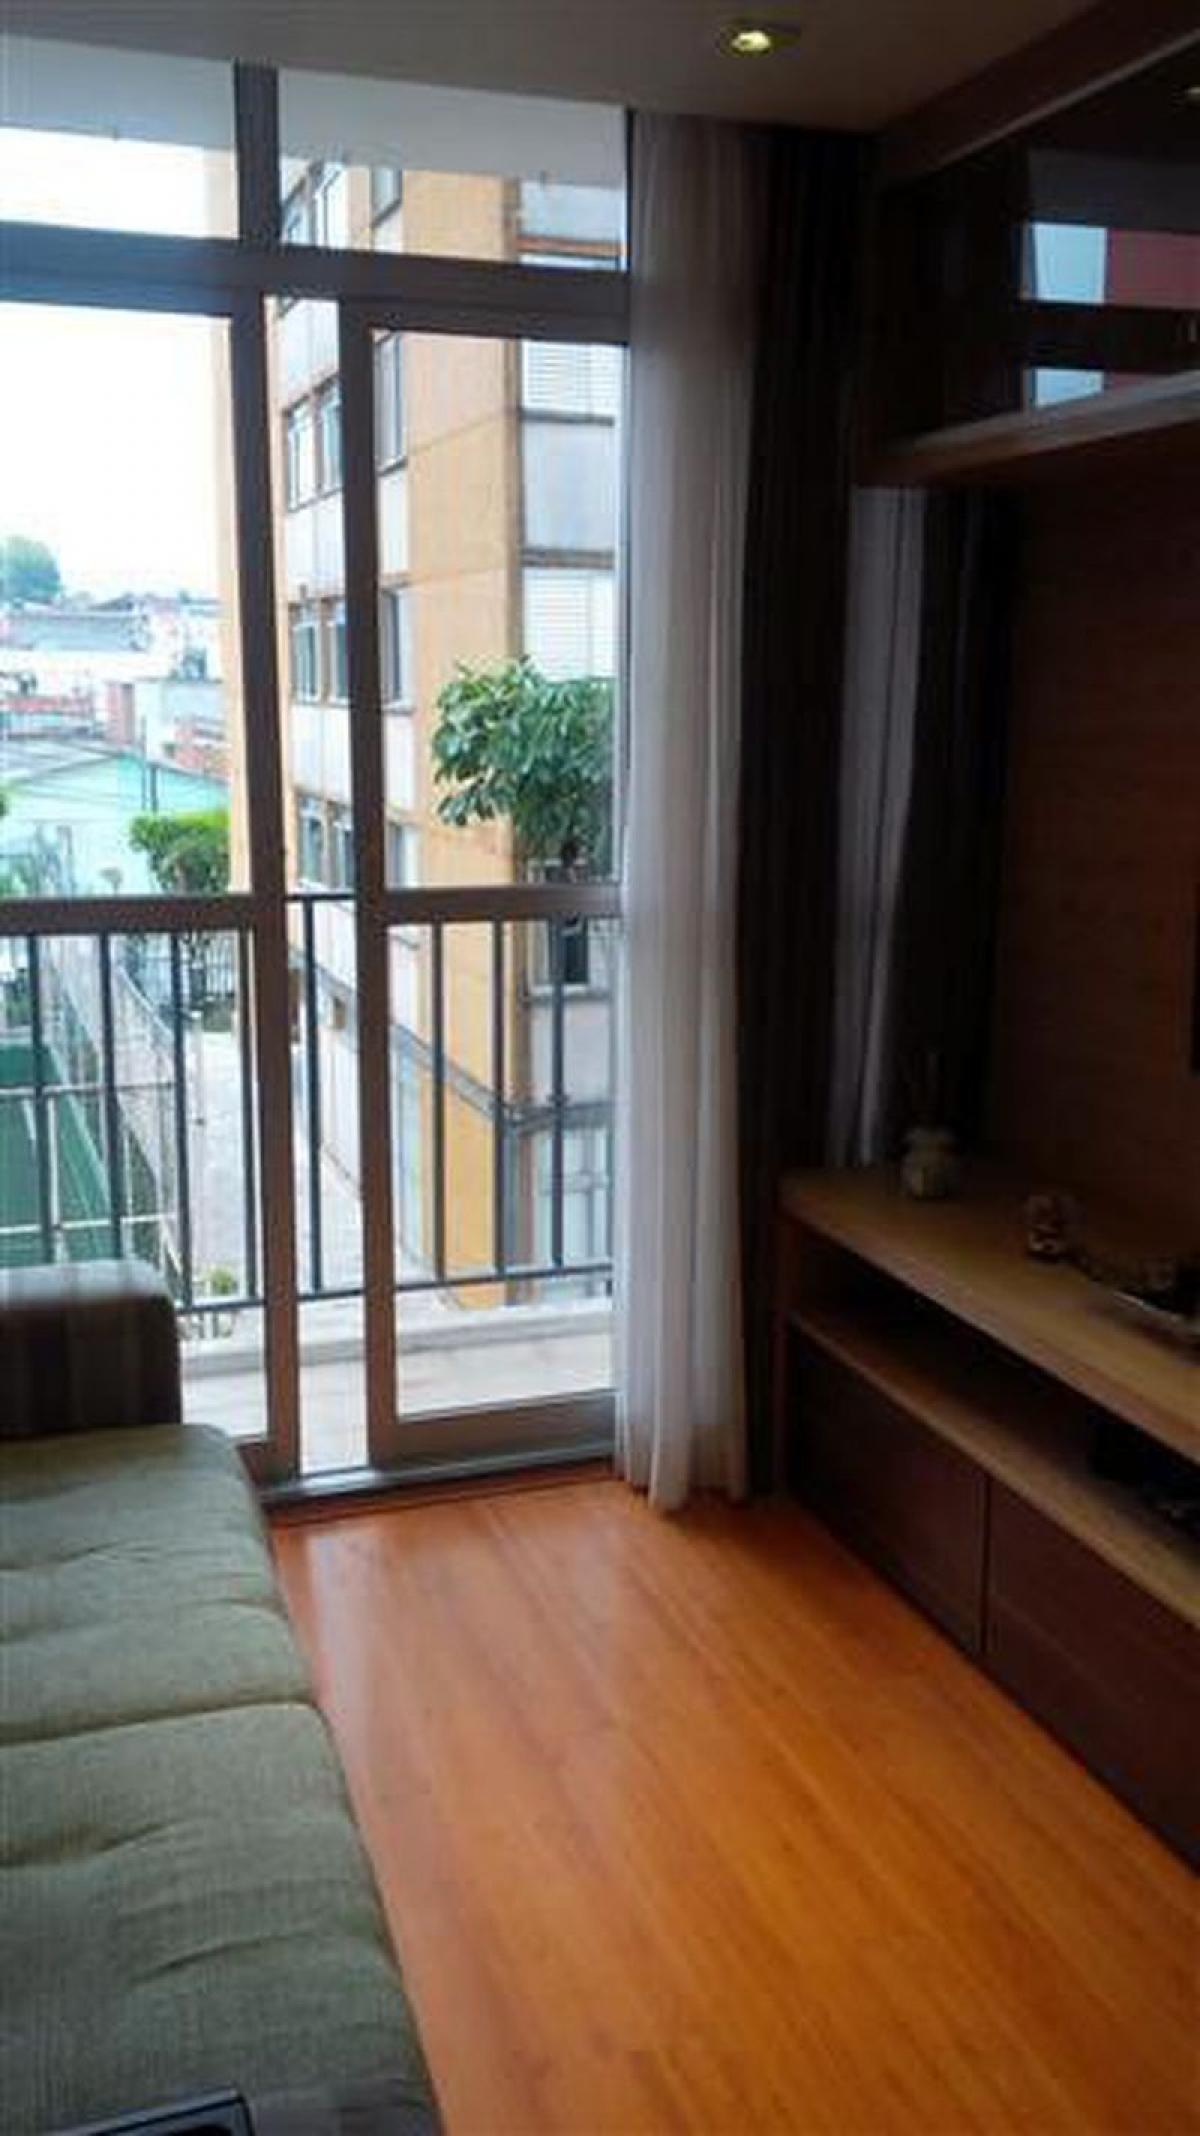 Picture of Apartment For Sale in Diadema, Sao Paulo, Brazil